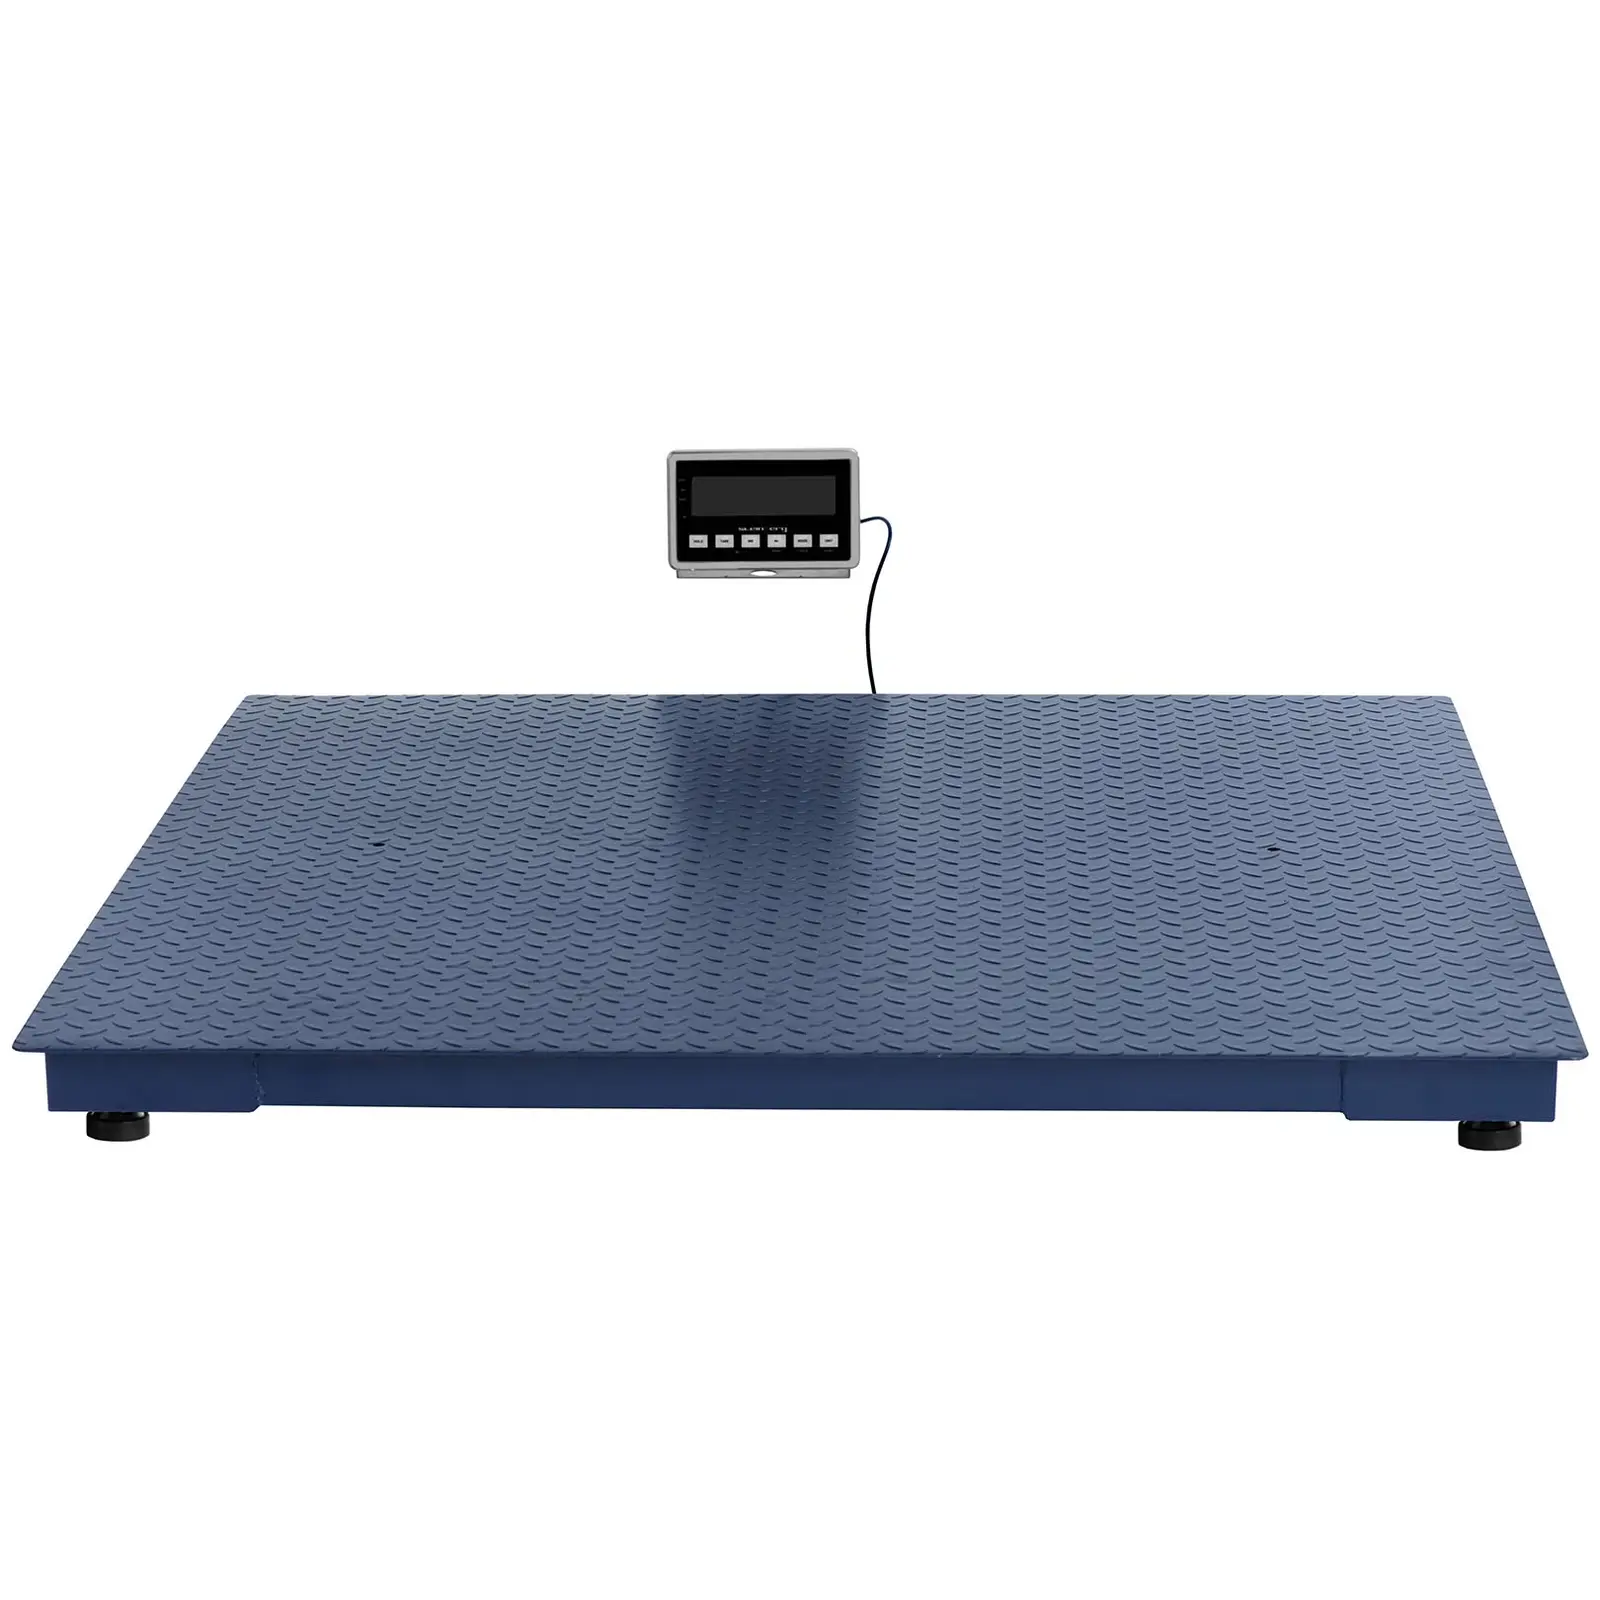 Floor scale - 3000 kg / 1 kg - 1500 x 1500 mm - LCD